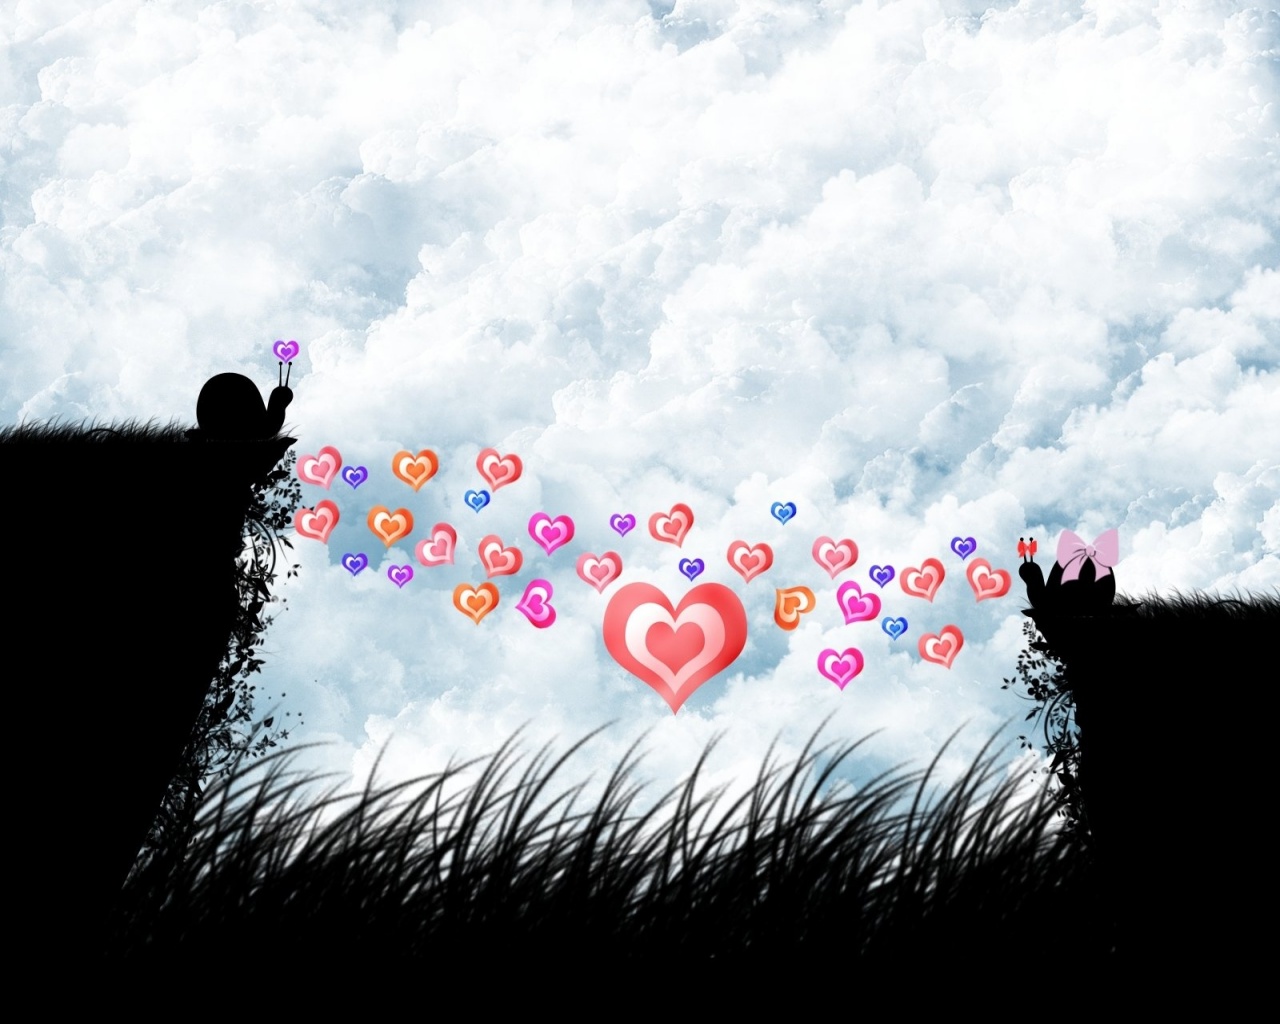 joy of love wallpaper hd Desktop Backgrounds for HD Wallpaper 1280x1024